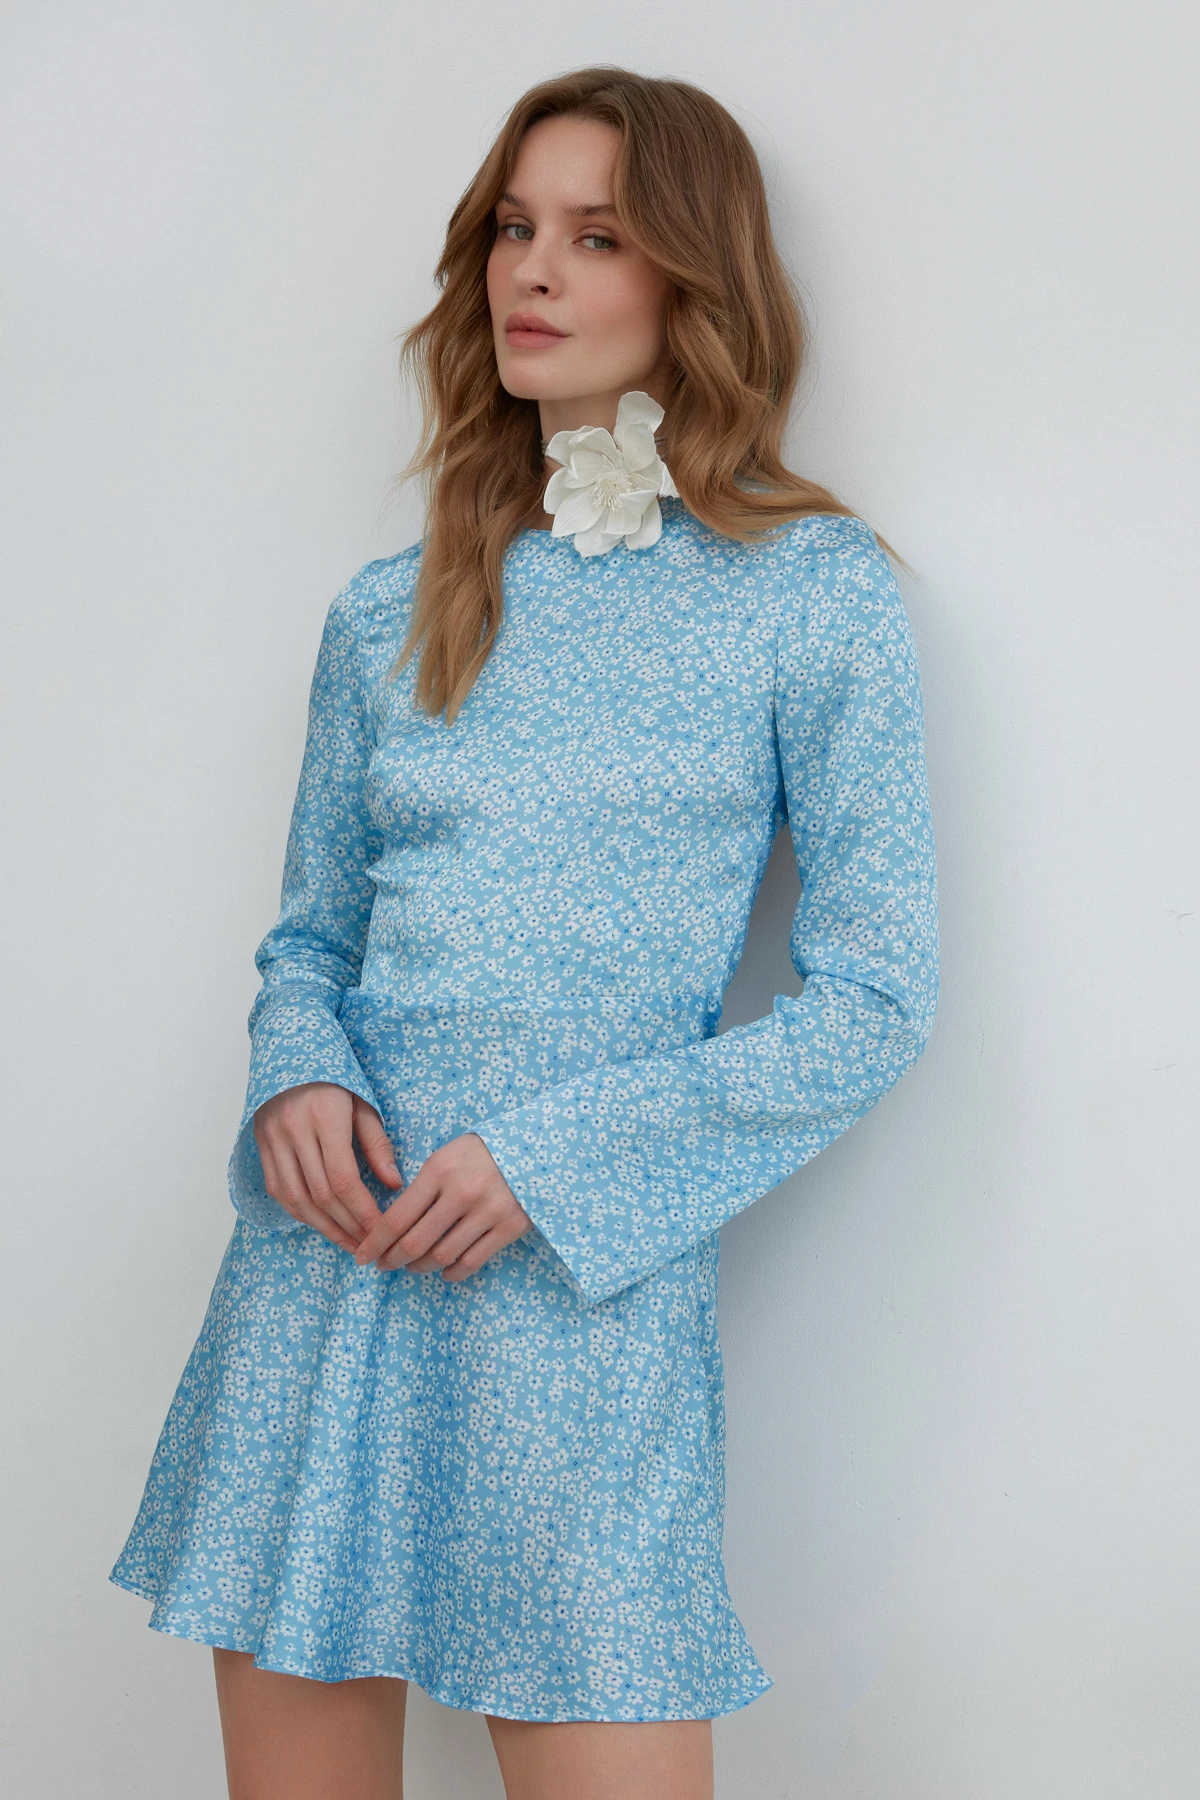 Коротка блакитна сатинова сукня  в принт "молочні квіти", фото 5